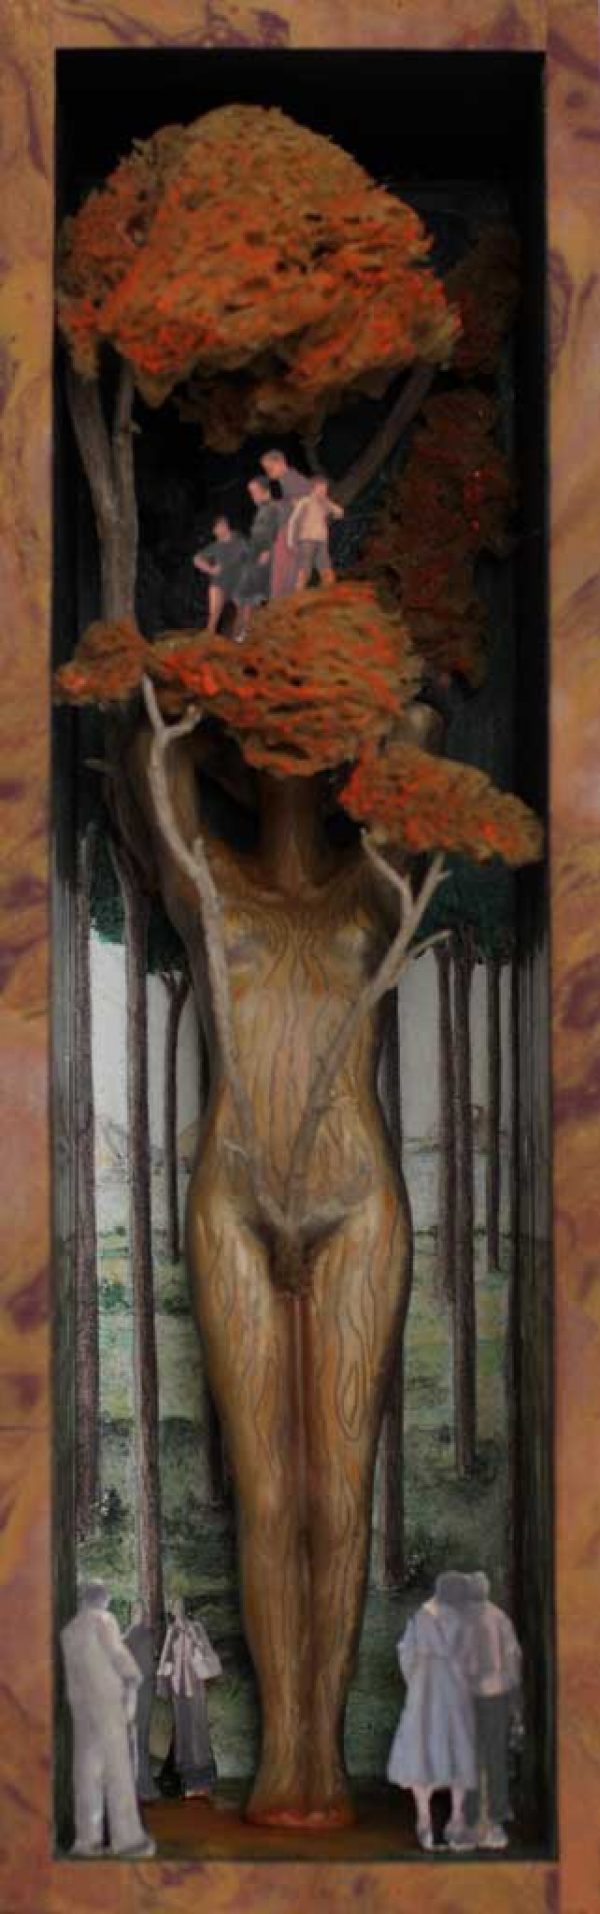 Szenczi y Mañas - La mujer secuoya - Caja de madera, escultura en resina y materiales diversos - 2015